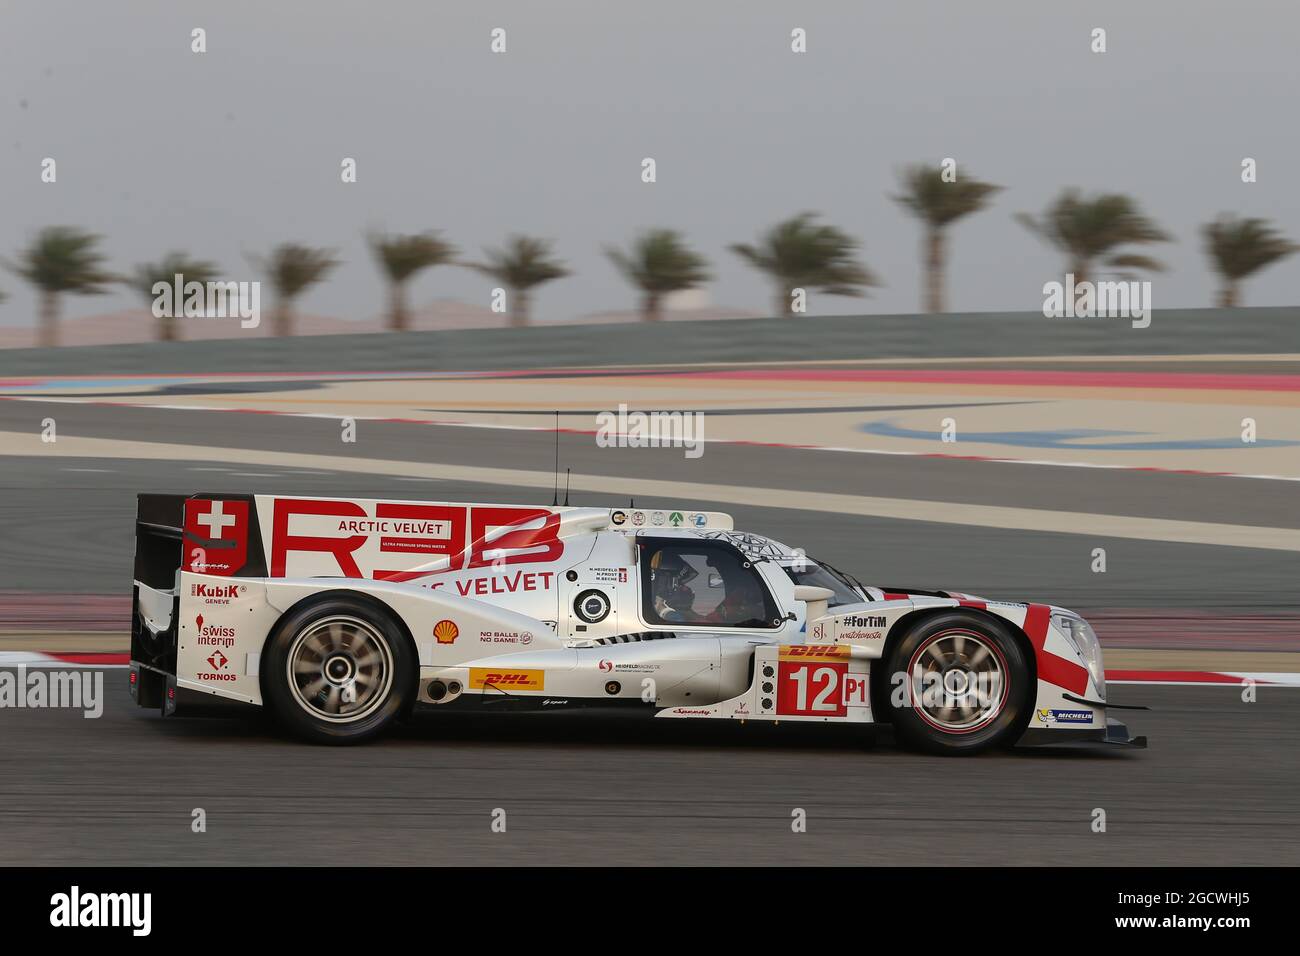 12 Rebellion Racing Rebellion R1 Toyota. Campionato Mondiale FIA Endurance, turno 8, giovedì 19 novembre 2015. Sakhir, Bahrein. Foto Stock